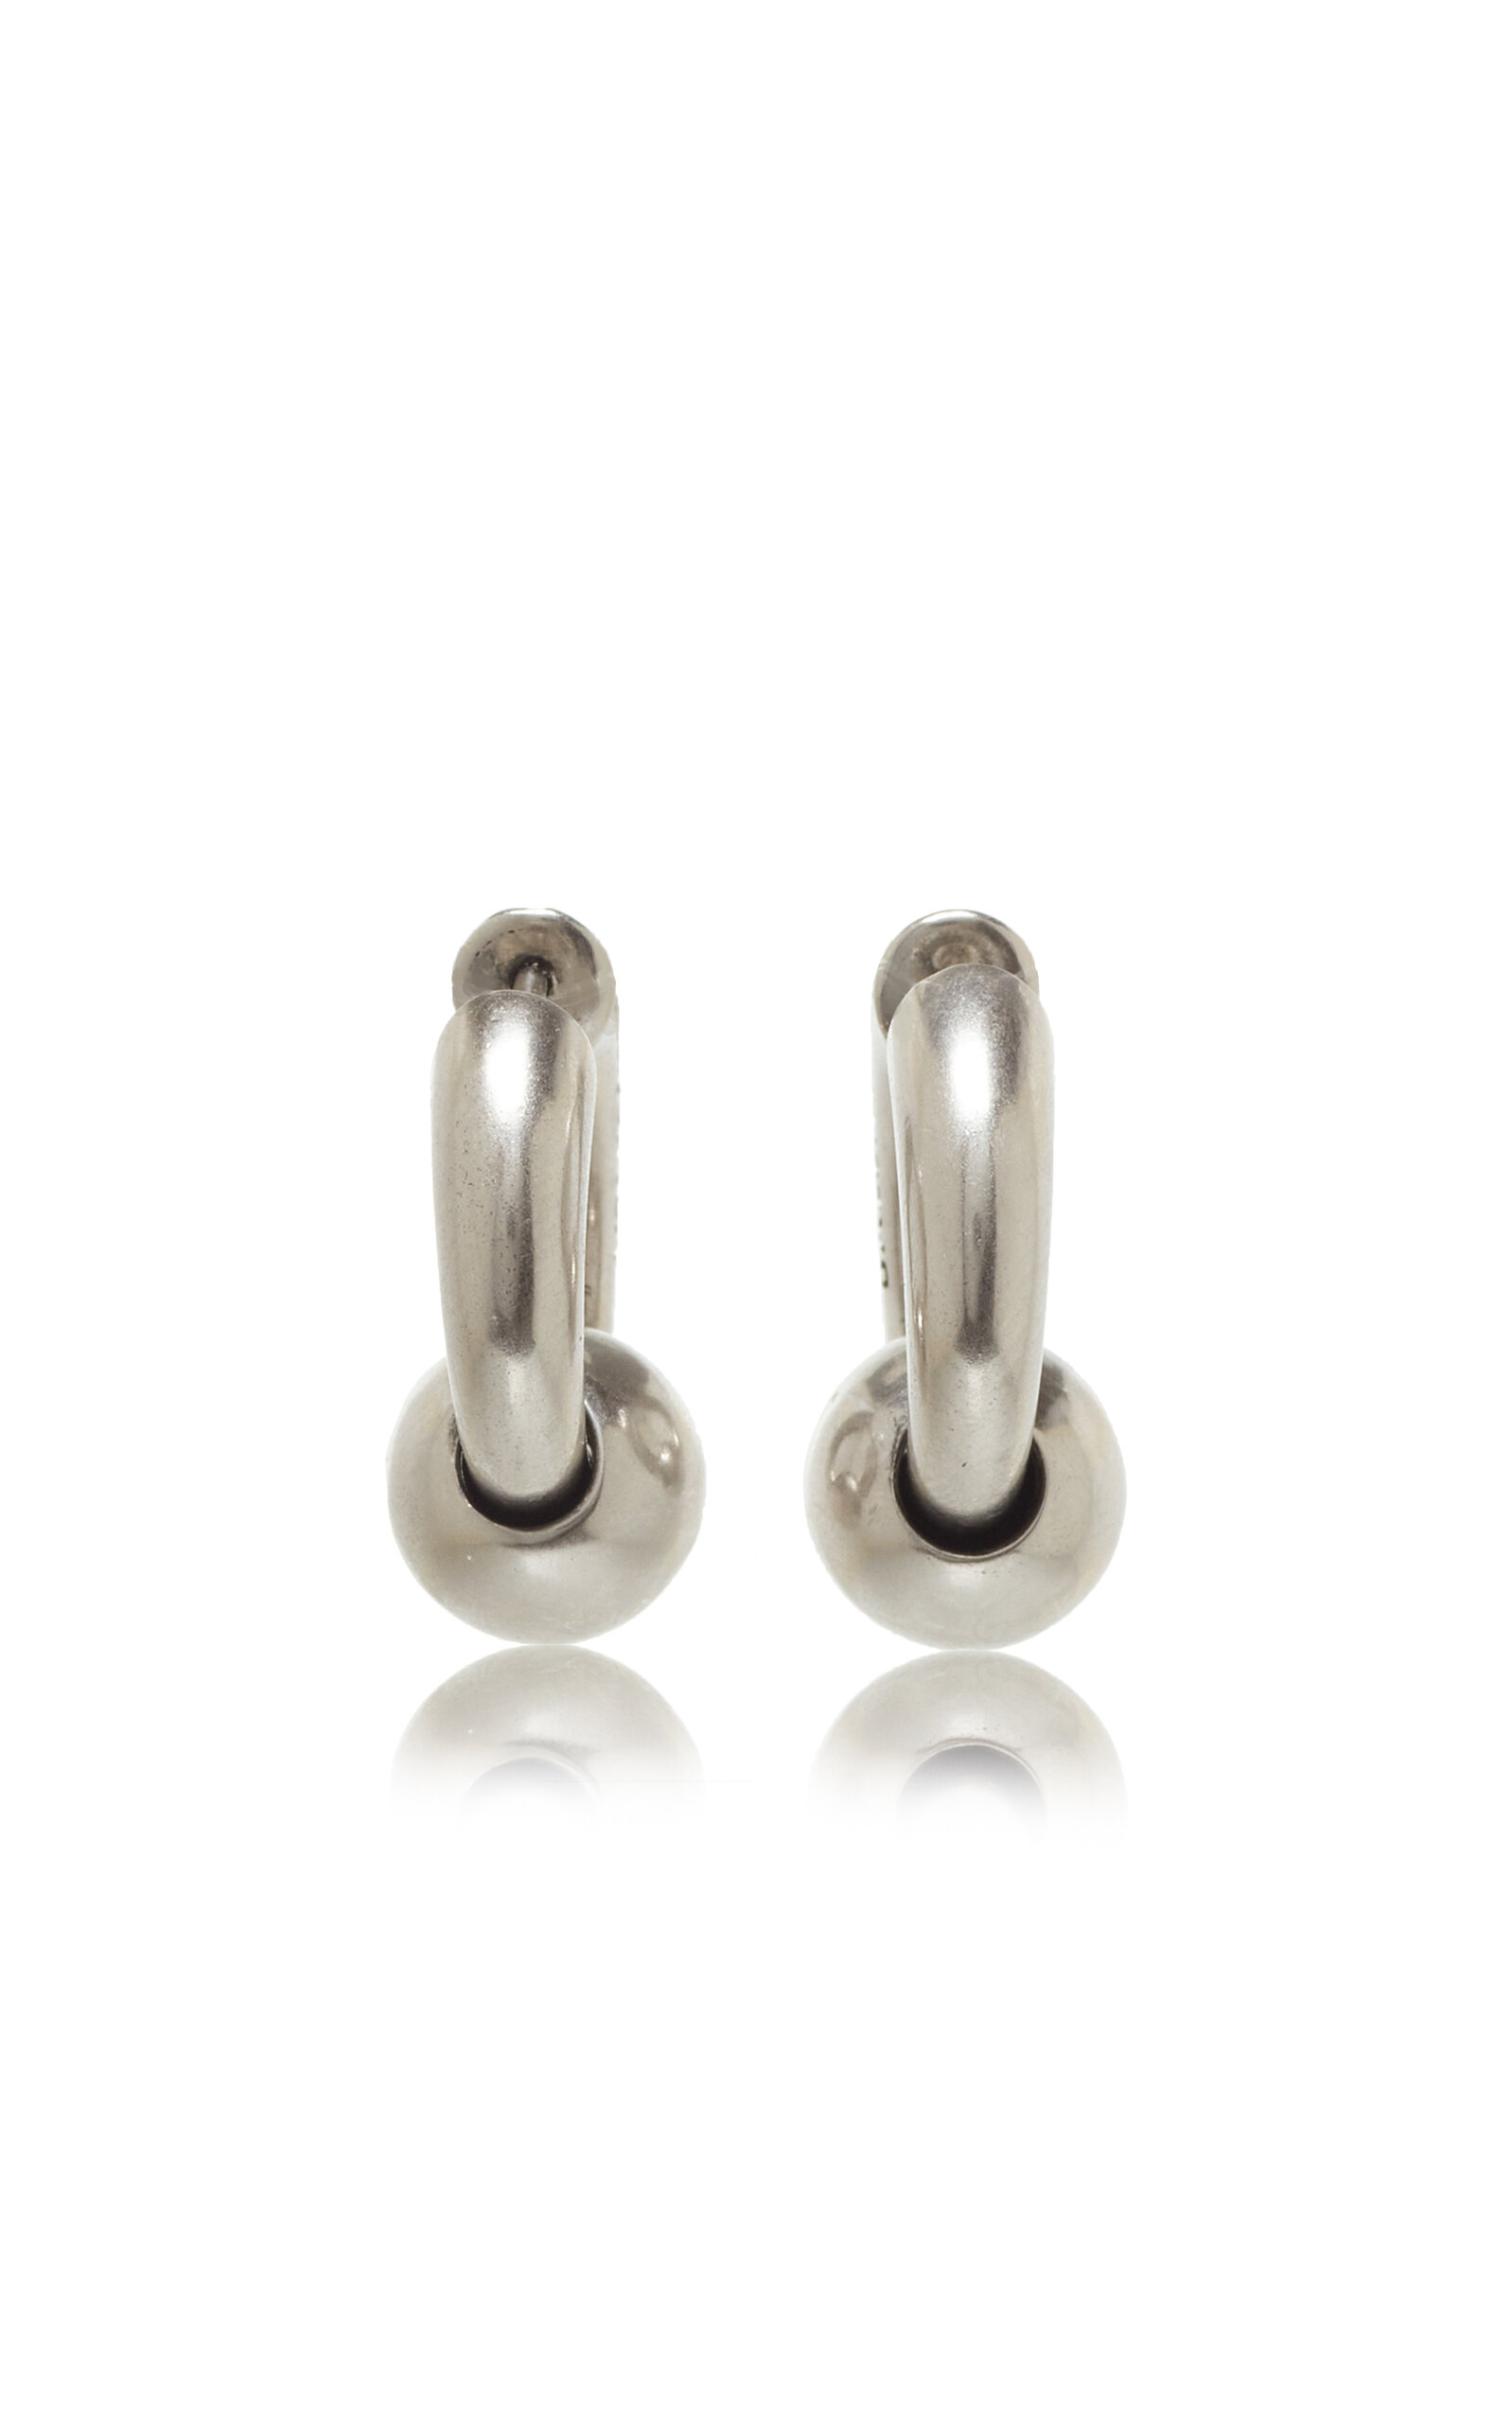 Balenciaga - Mega Silver-Tone Hoop Earrings - Silver - OS - Moda Operandi - Gifts For Her